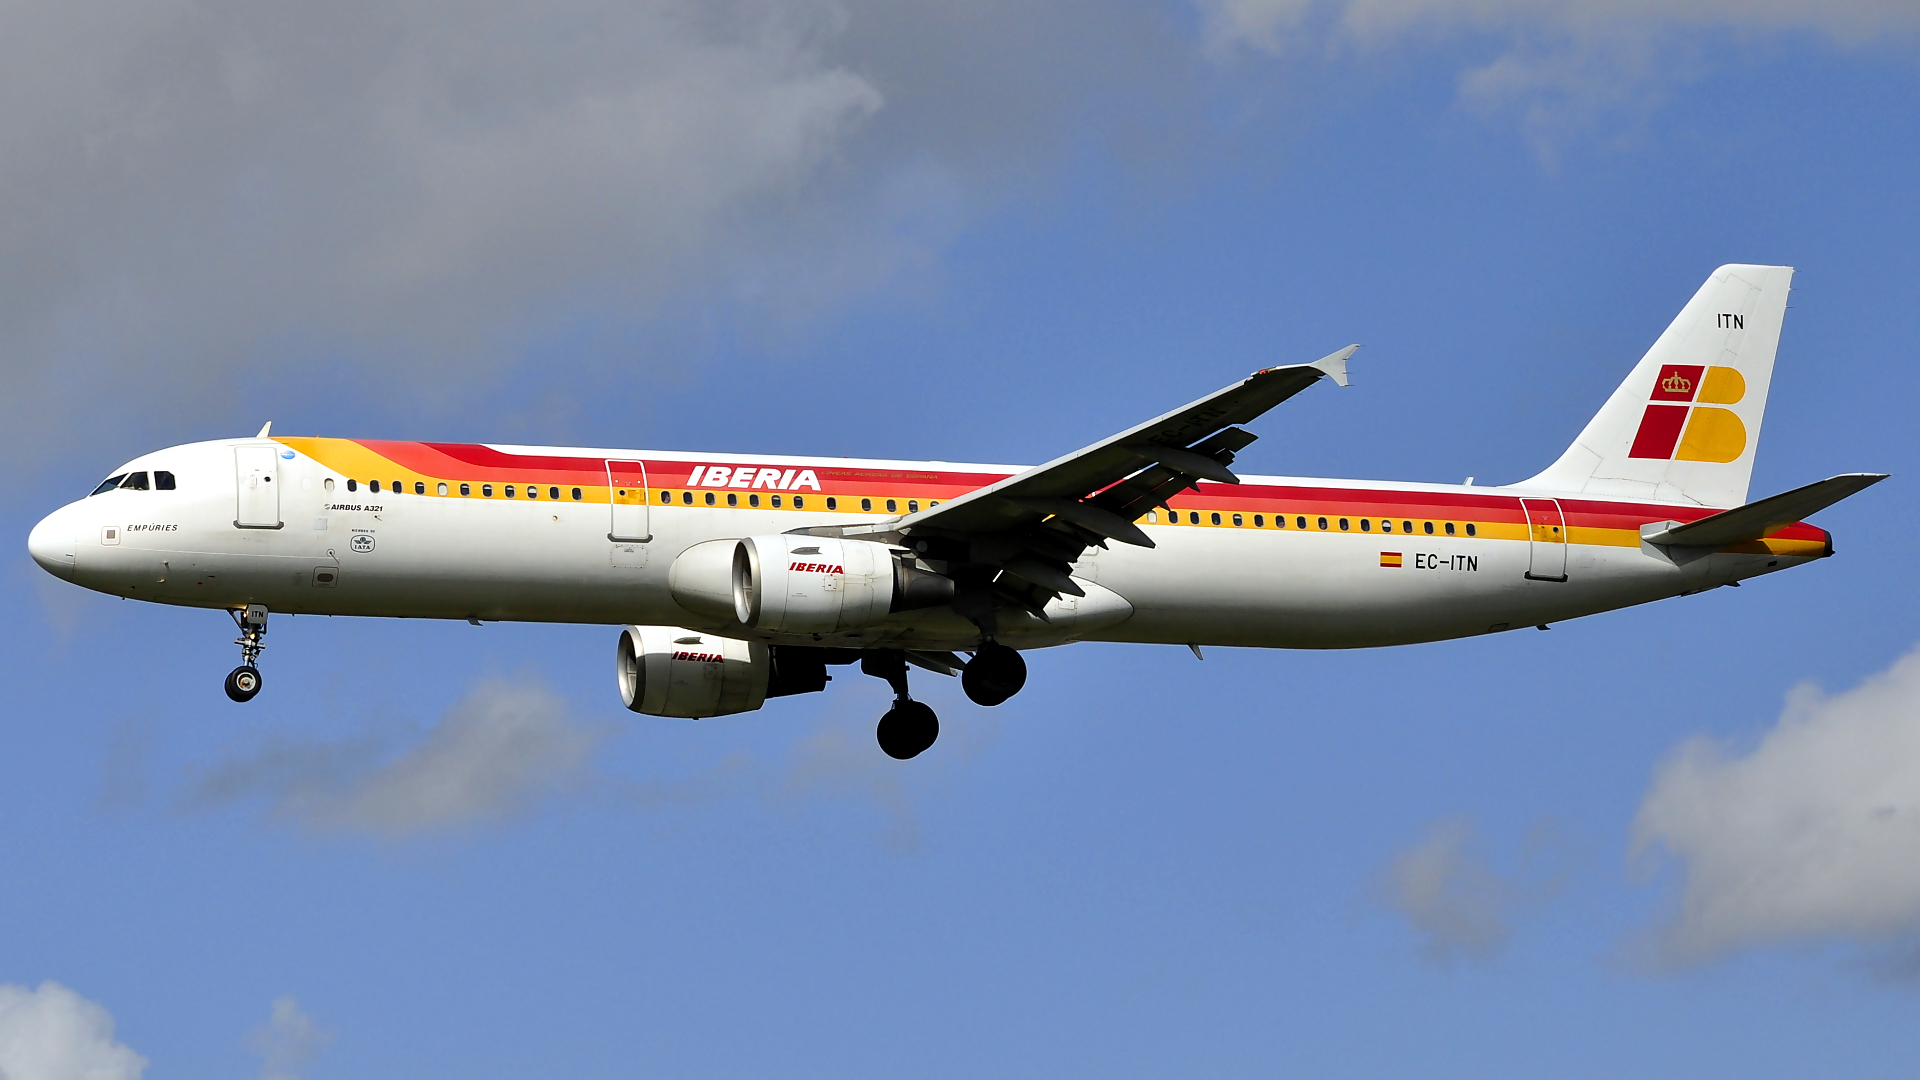 EC-ITN ✈ Iberia Airlines Airbus 321-211 @ London-Heathrow